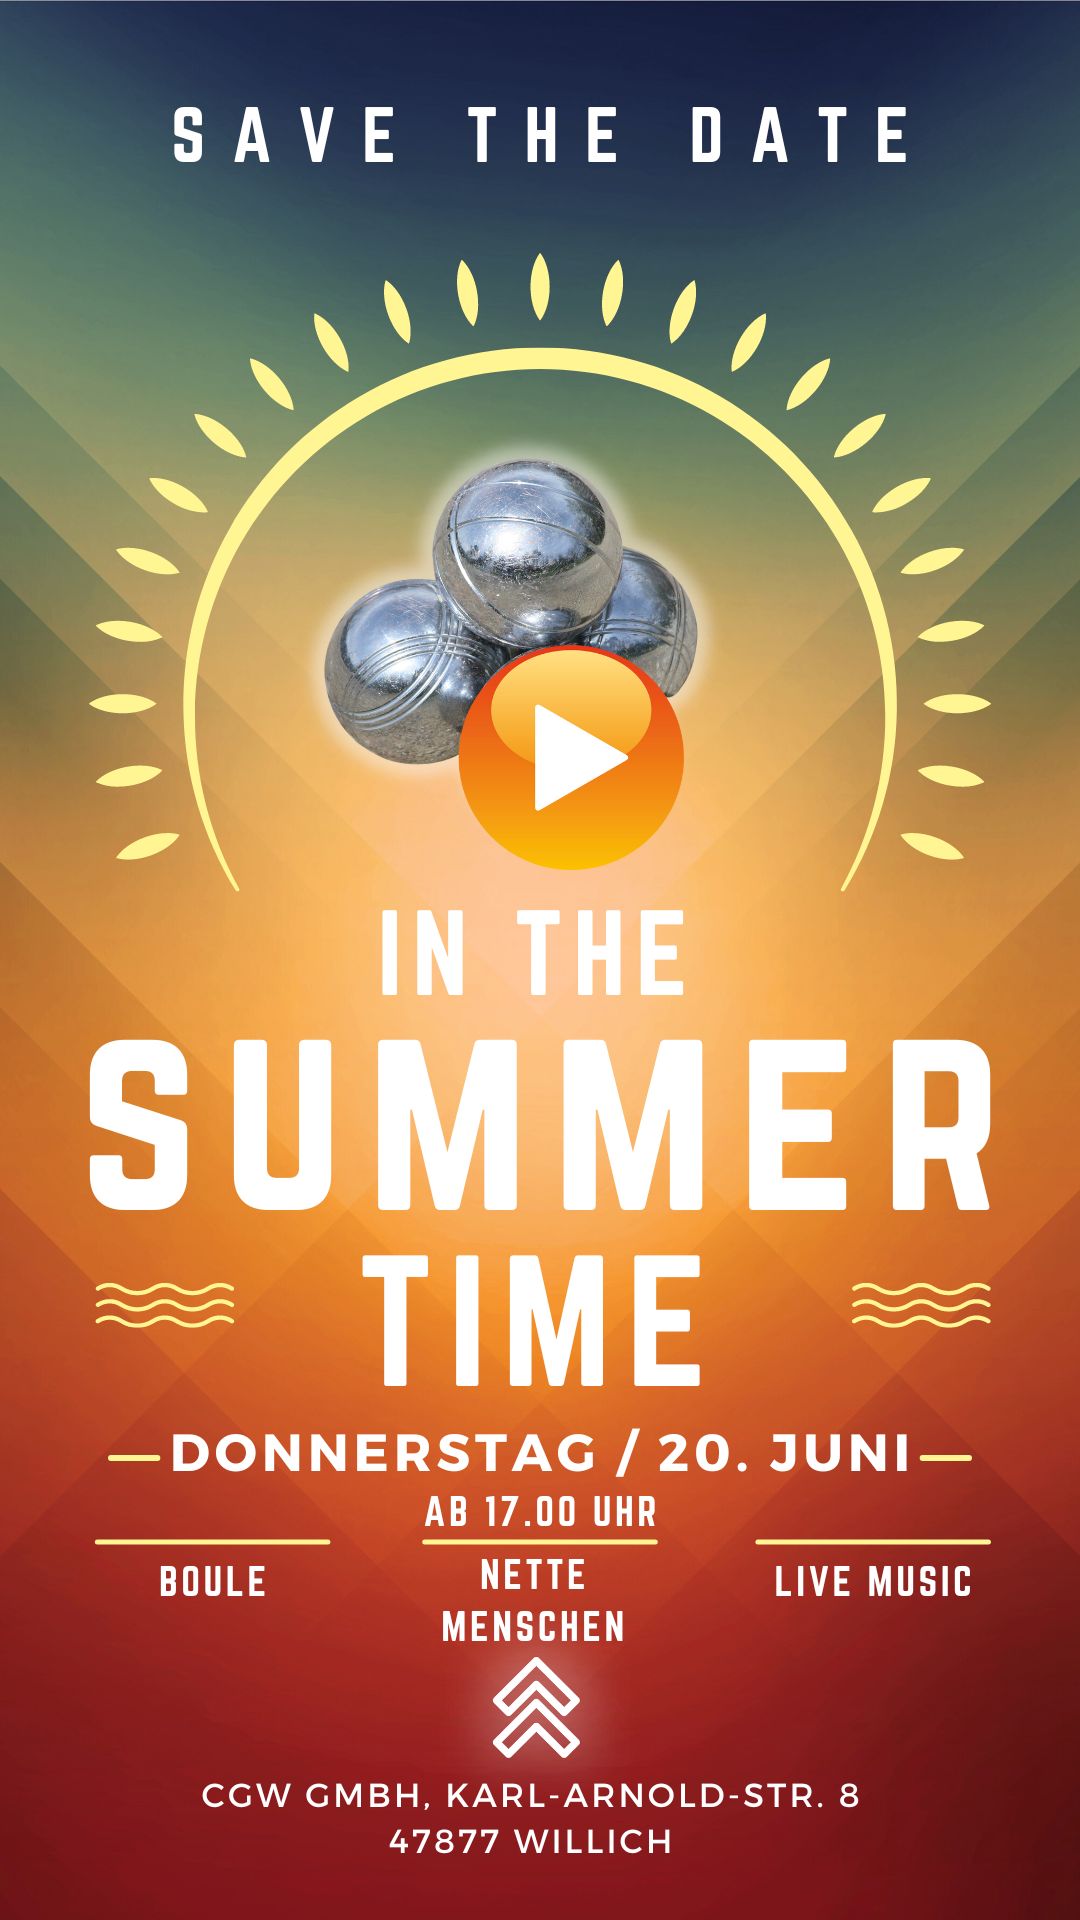 In the summertime – der Sommer beginnt bei uns!